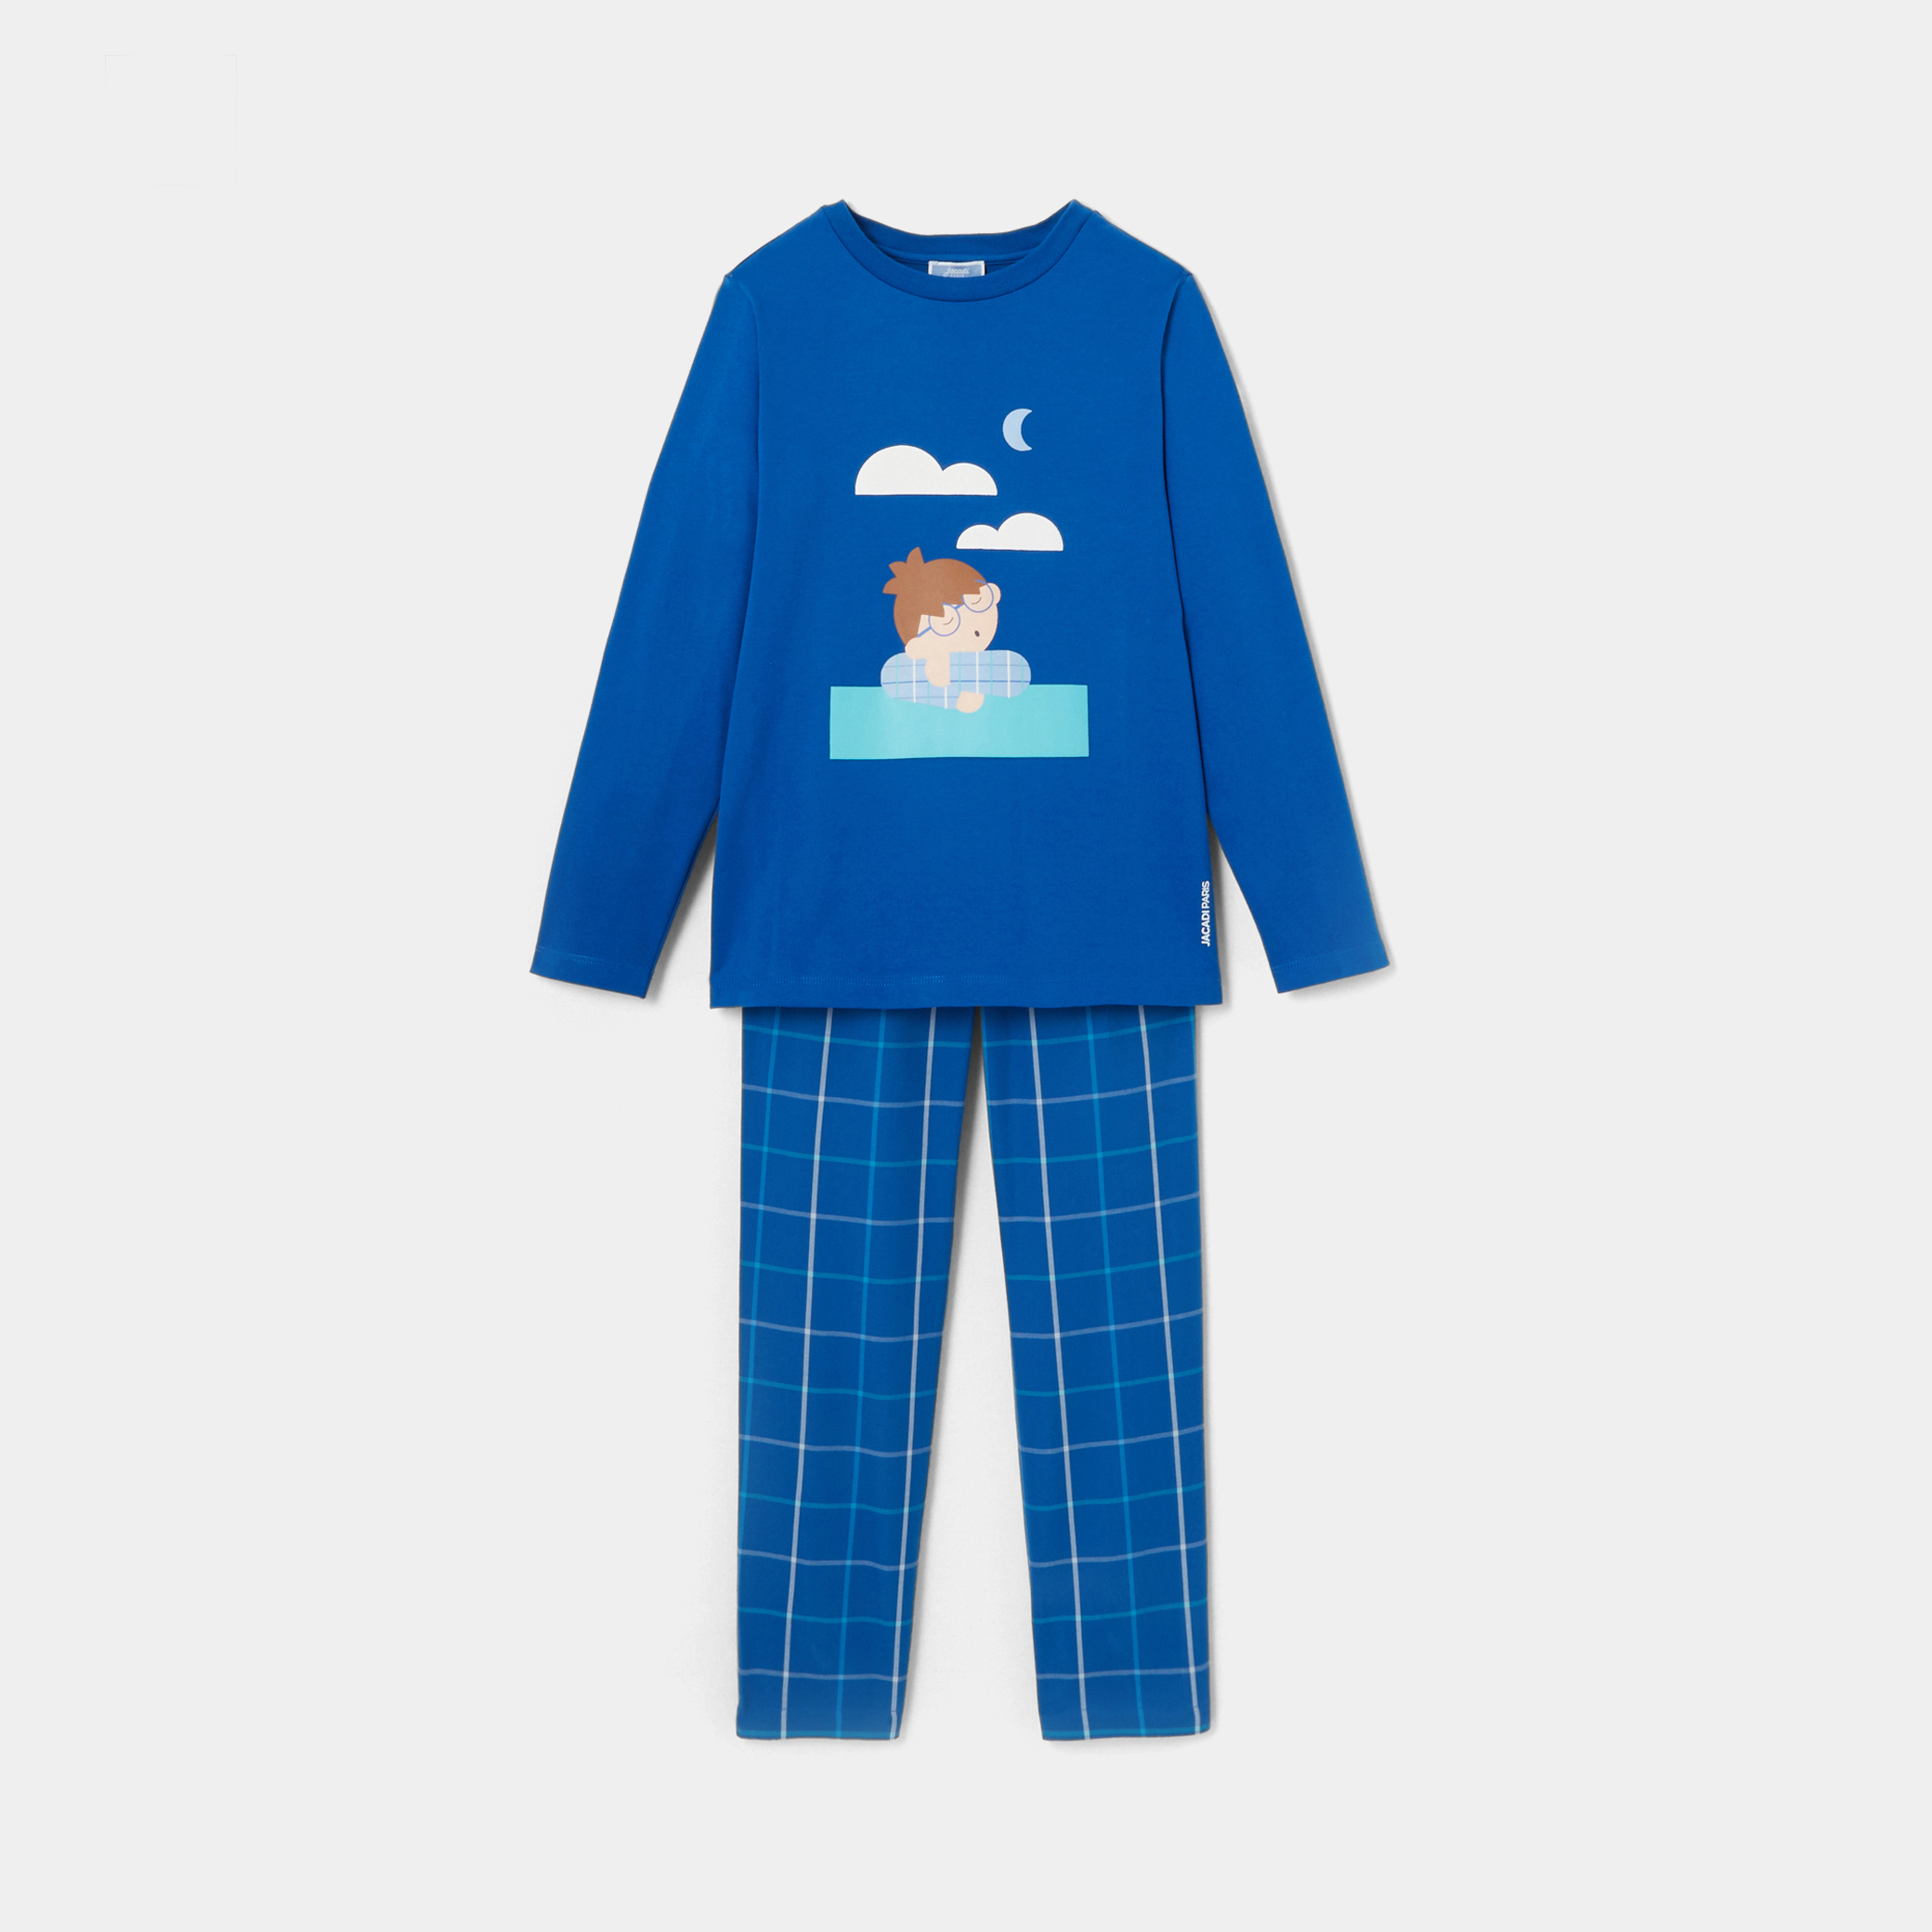 Boy pajamas